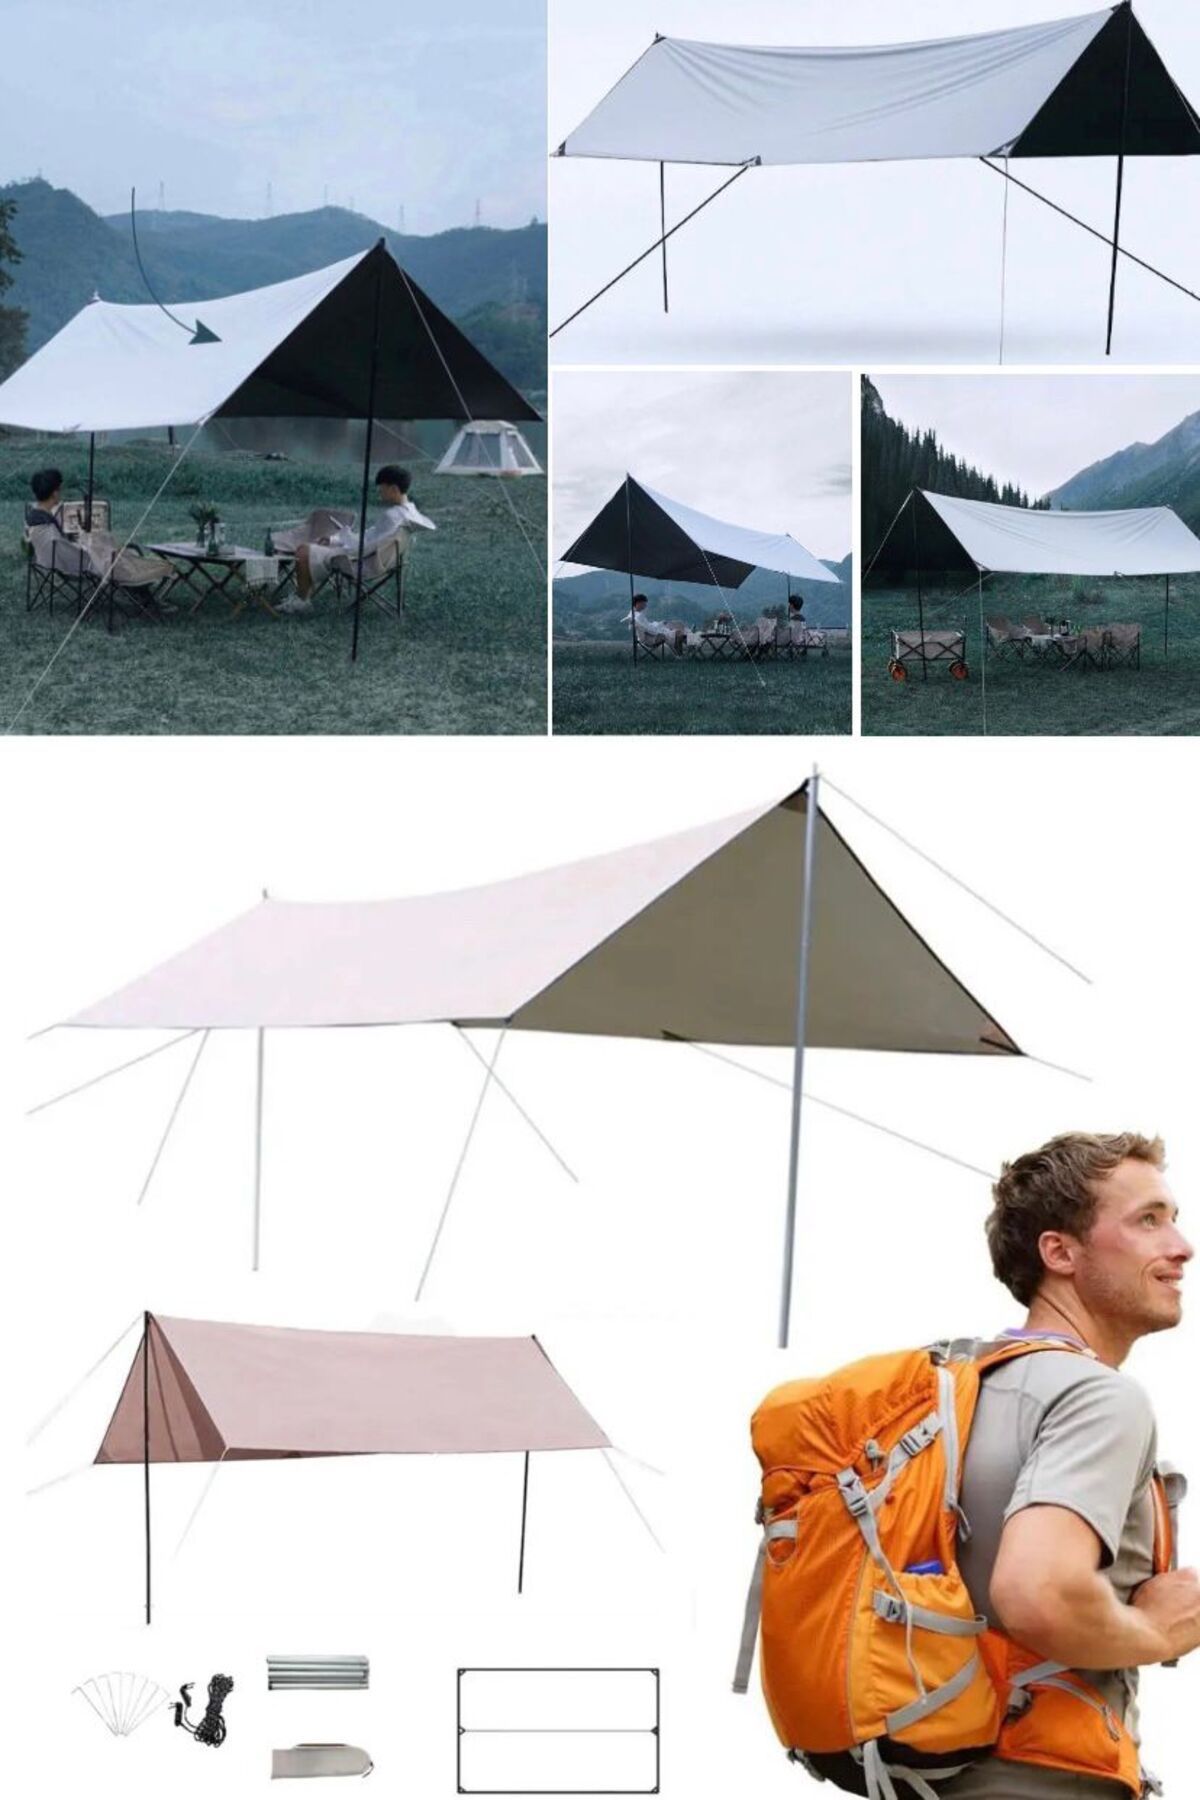 Utelips Tente Su Geçirmez Kamp Çadır Gölge Direk Katlanır Kamp Kolay Ultralight Pratik Plaj Güneş Barınağı